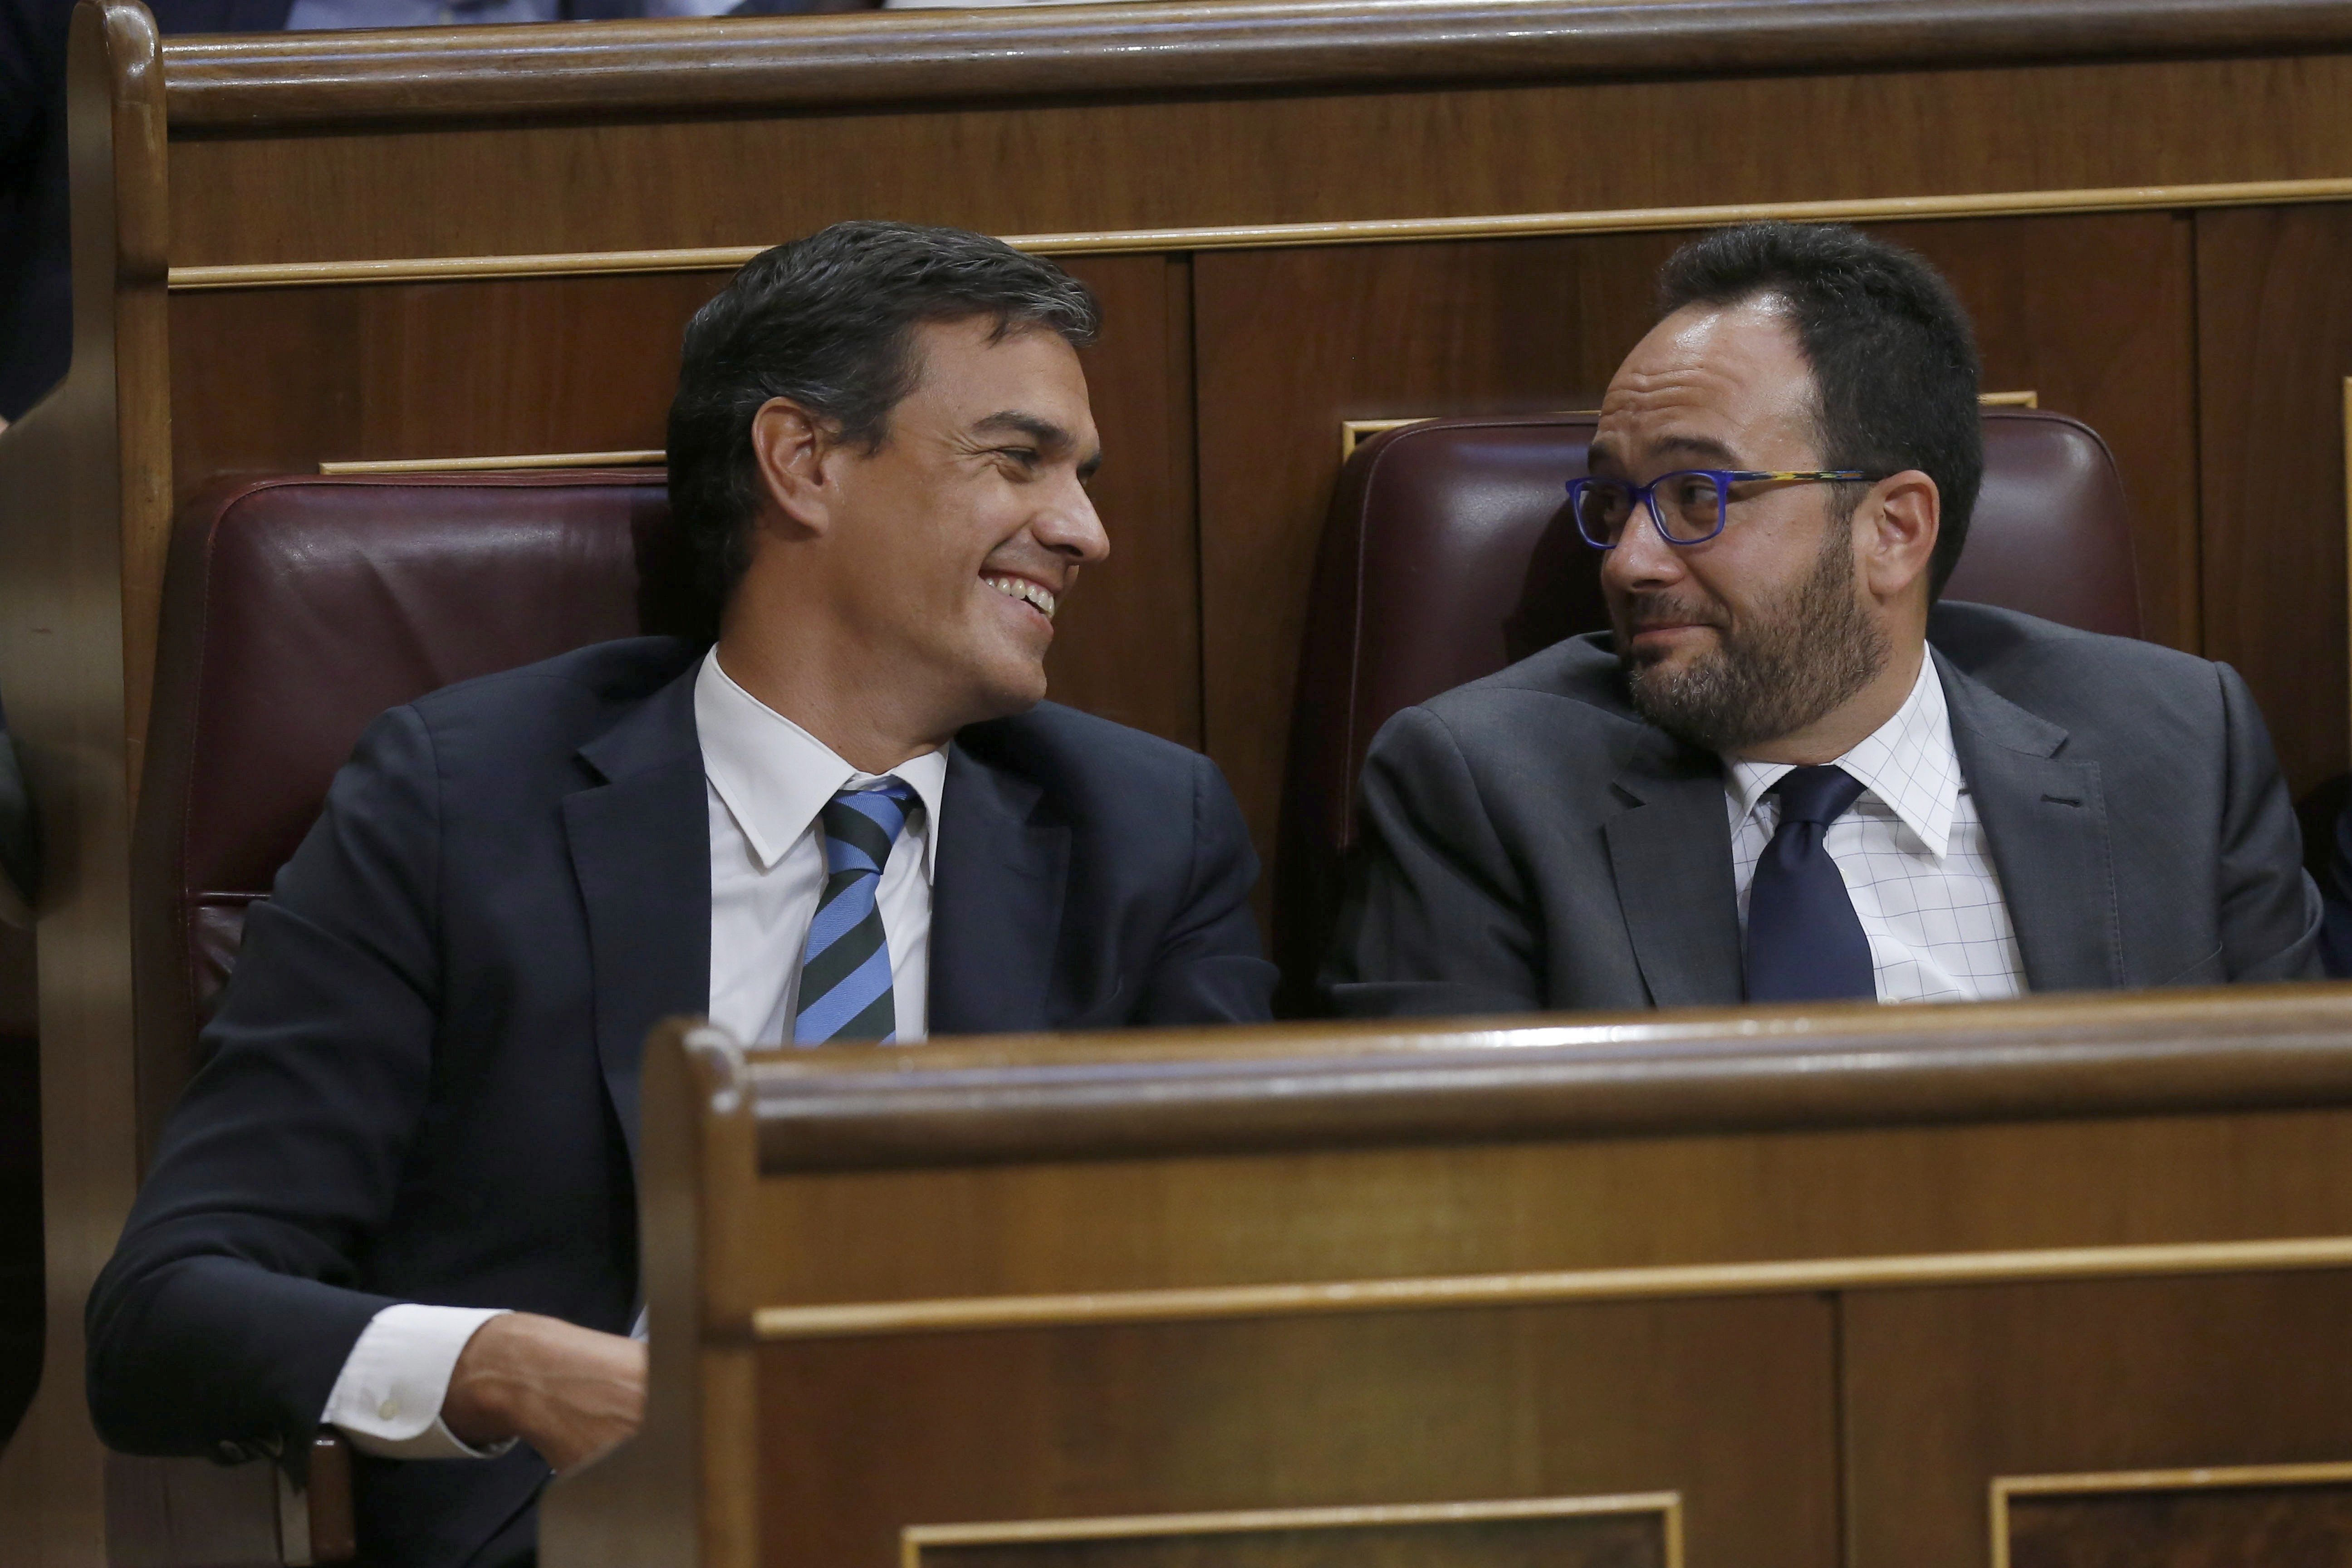 El discurs de Rajoy no fa el pes ni a C's